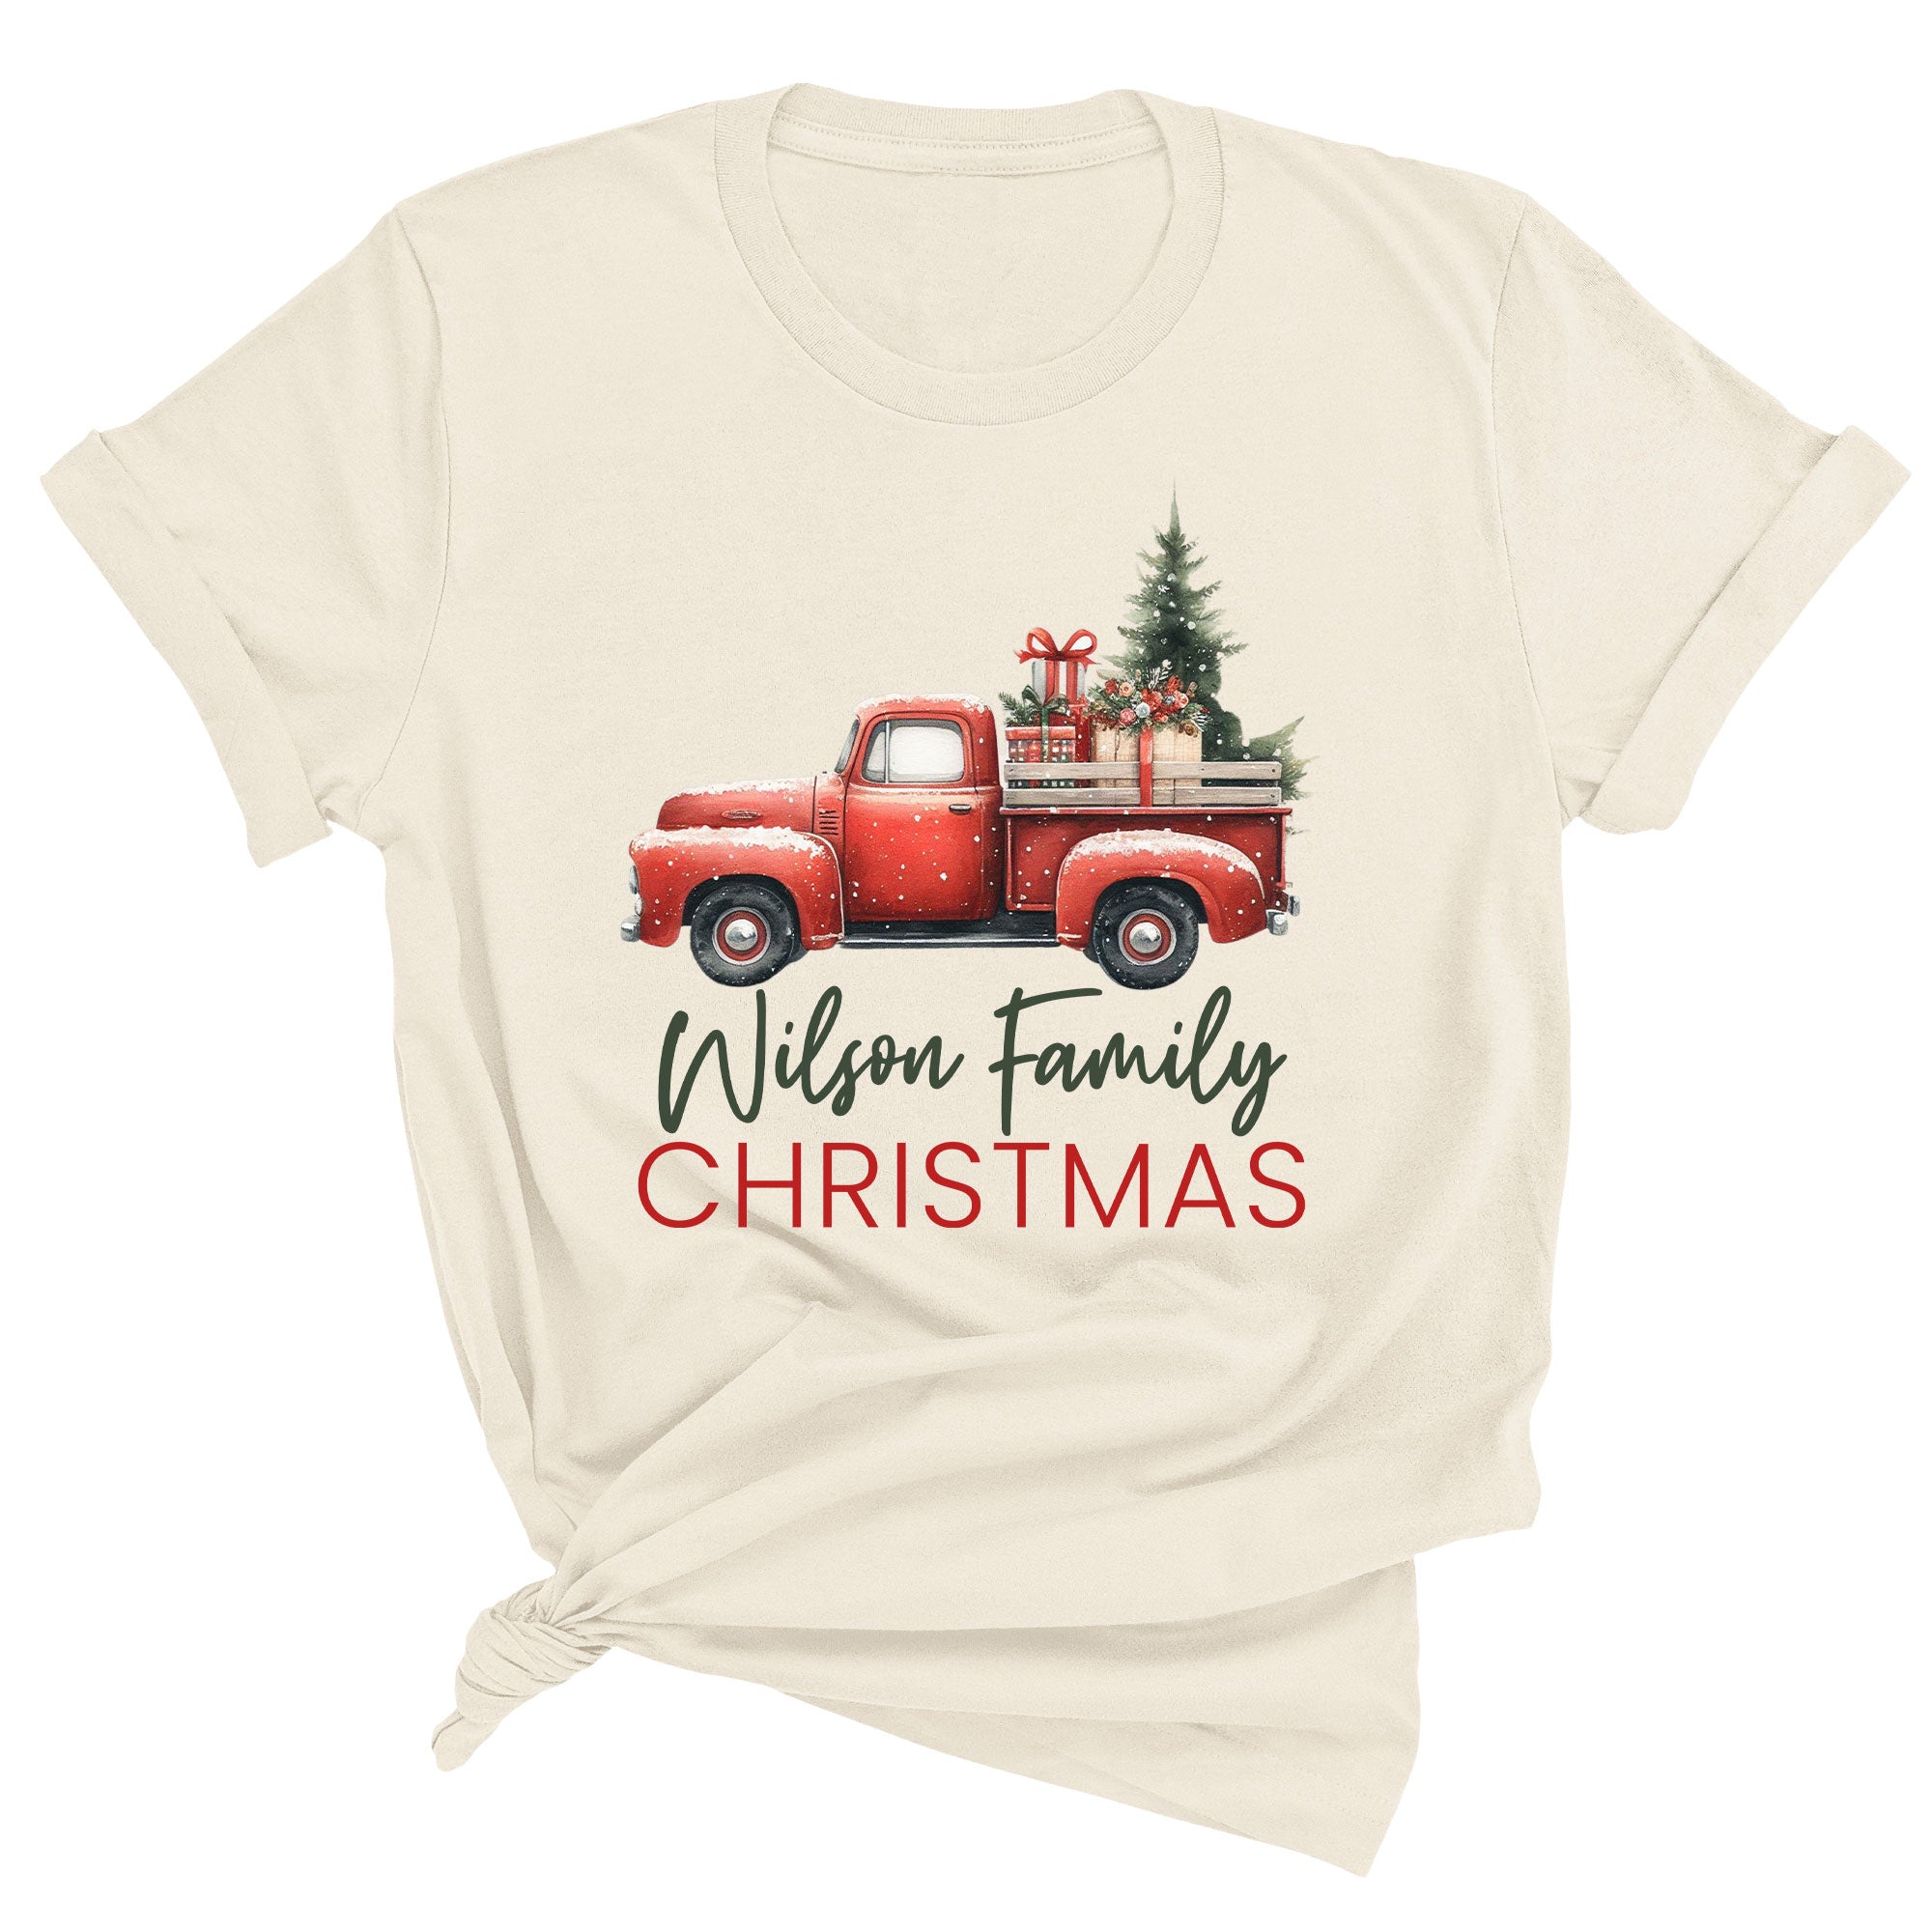 https://spunkypineapple.com/cdn/shop/files/Vintage-Red-Truck-Name-Family-Christmas_Unisex_NATURAL.jpg?v=1699475780